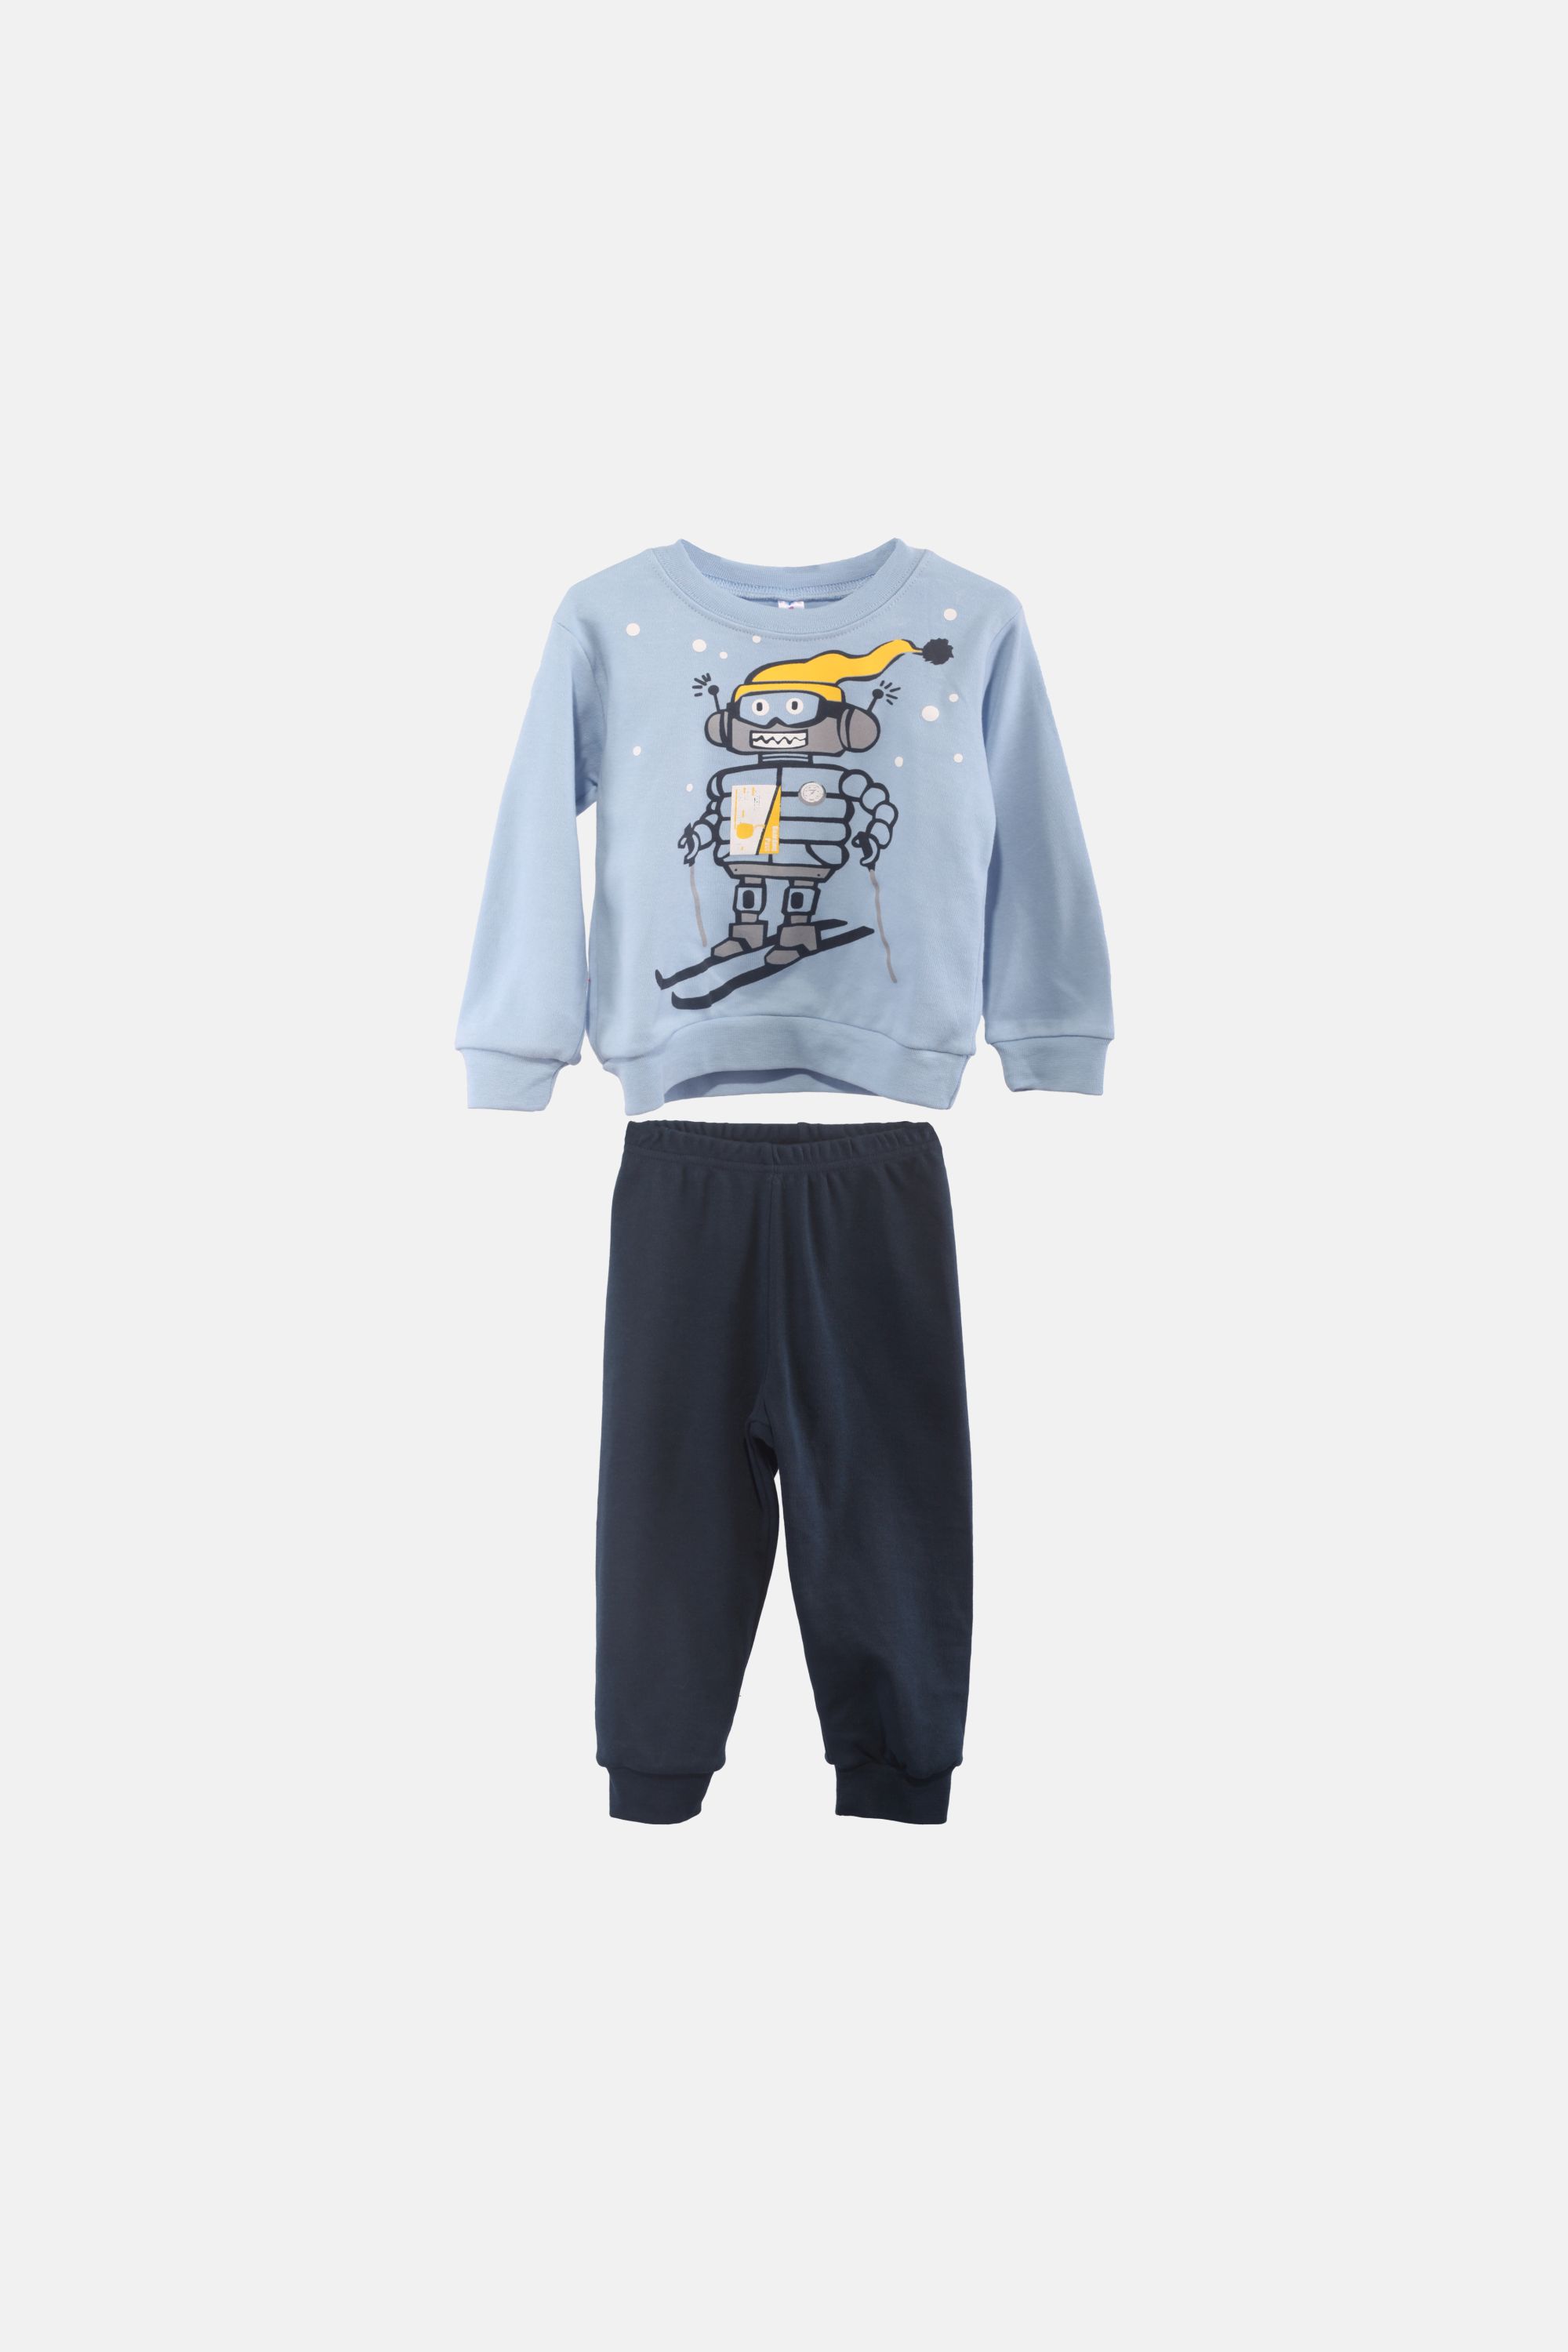 Chlapecké bavlněné pyžamo "ROBOT SET"/Modrá Barva: Modrá, Velikost: vel. 1 (78/86 cm)